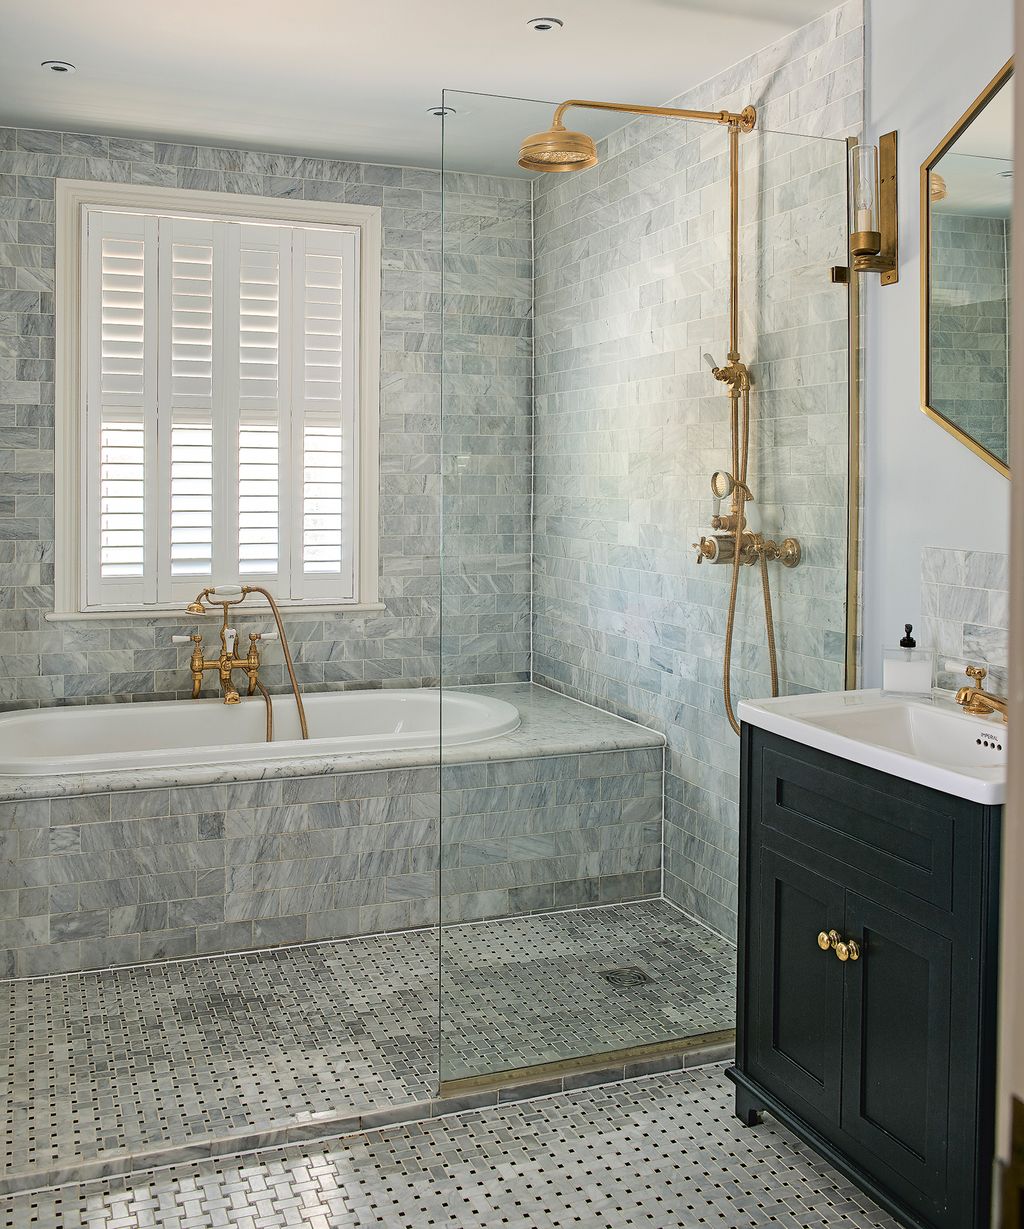 Shower tile ideas: 15 smart ways to tile a bathroom shower | Homes ...